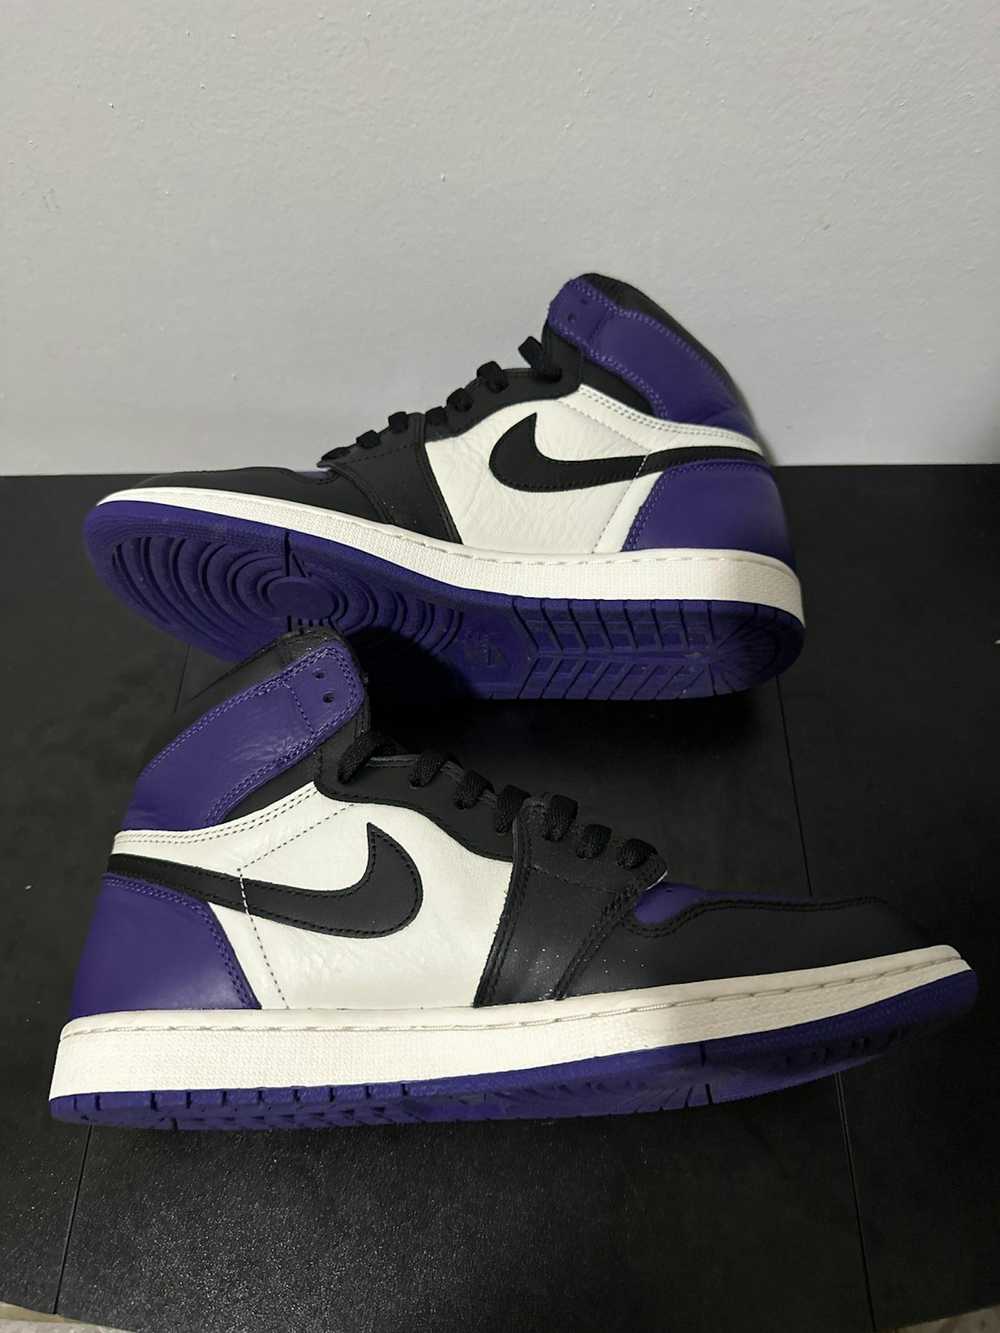 Jordan Brand Air Jordan 1 retro court purple - image 2